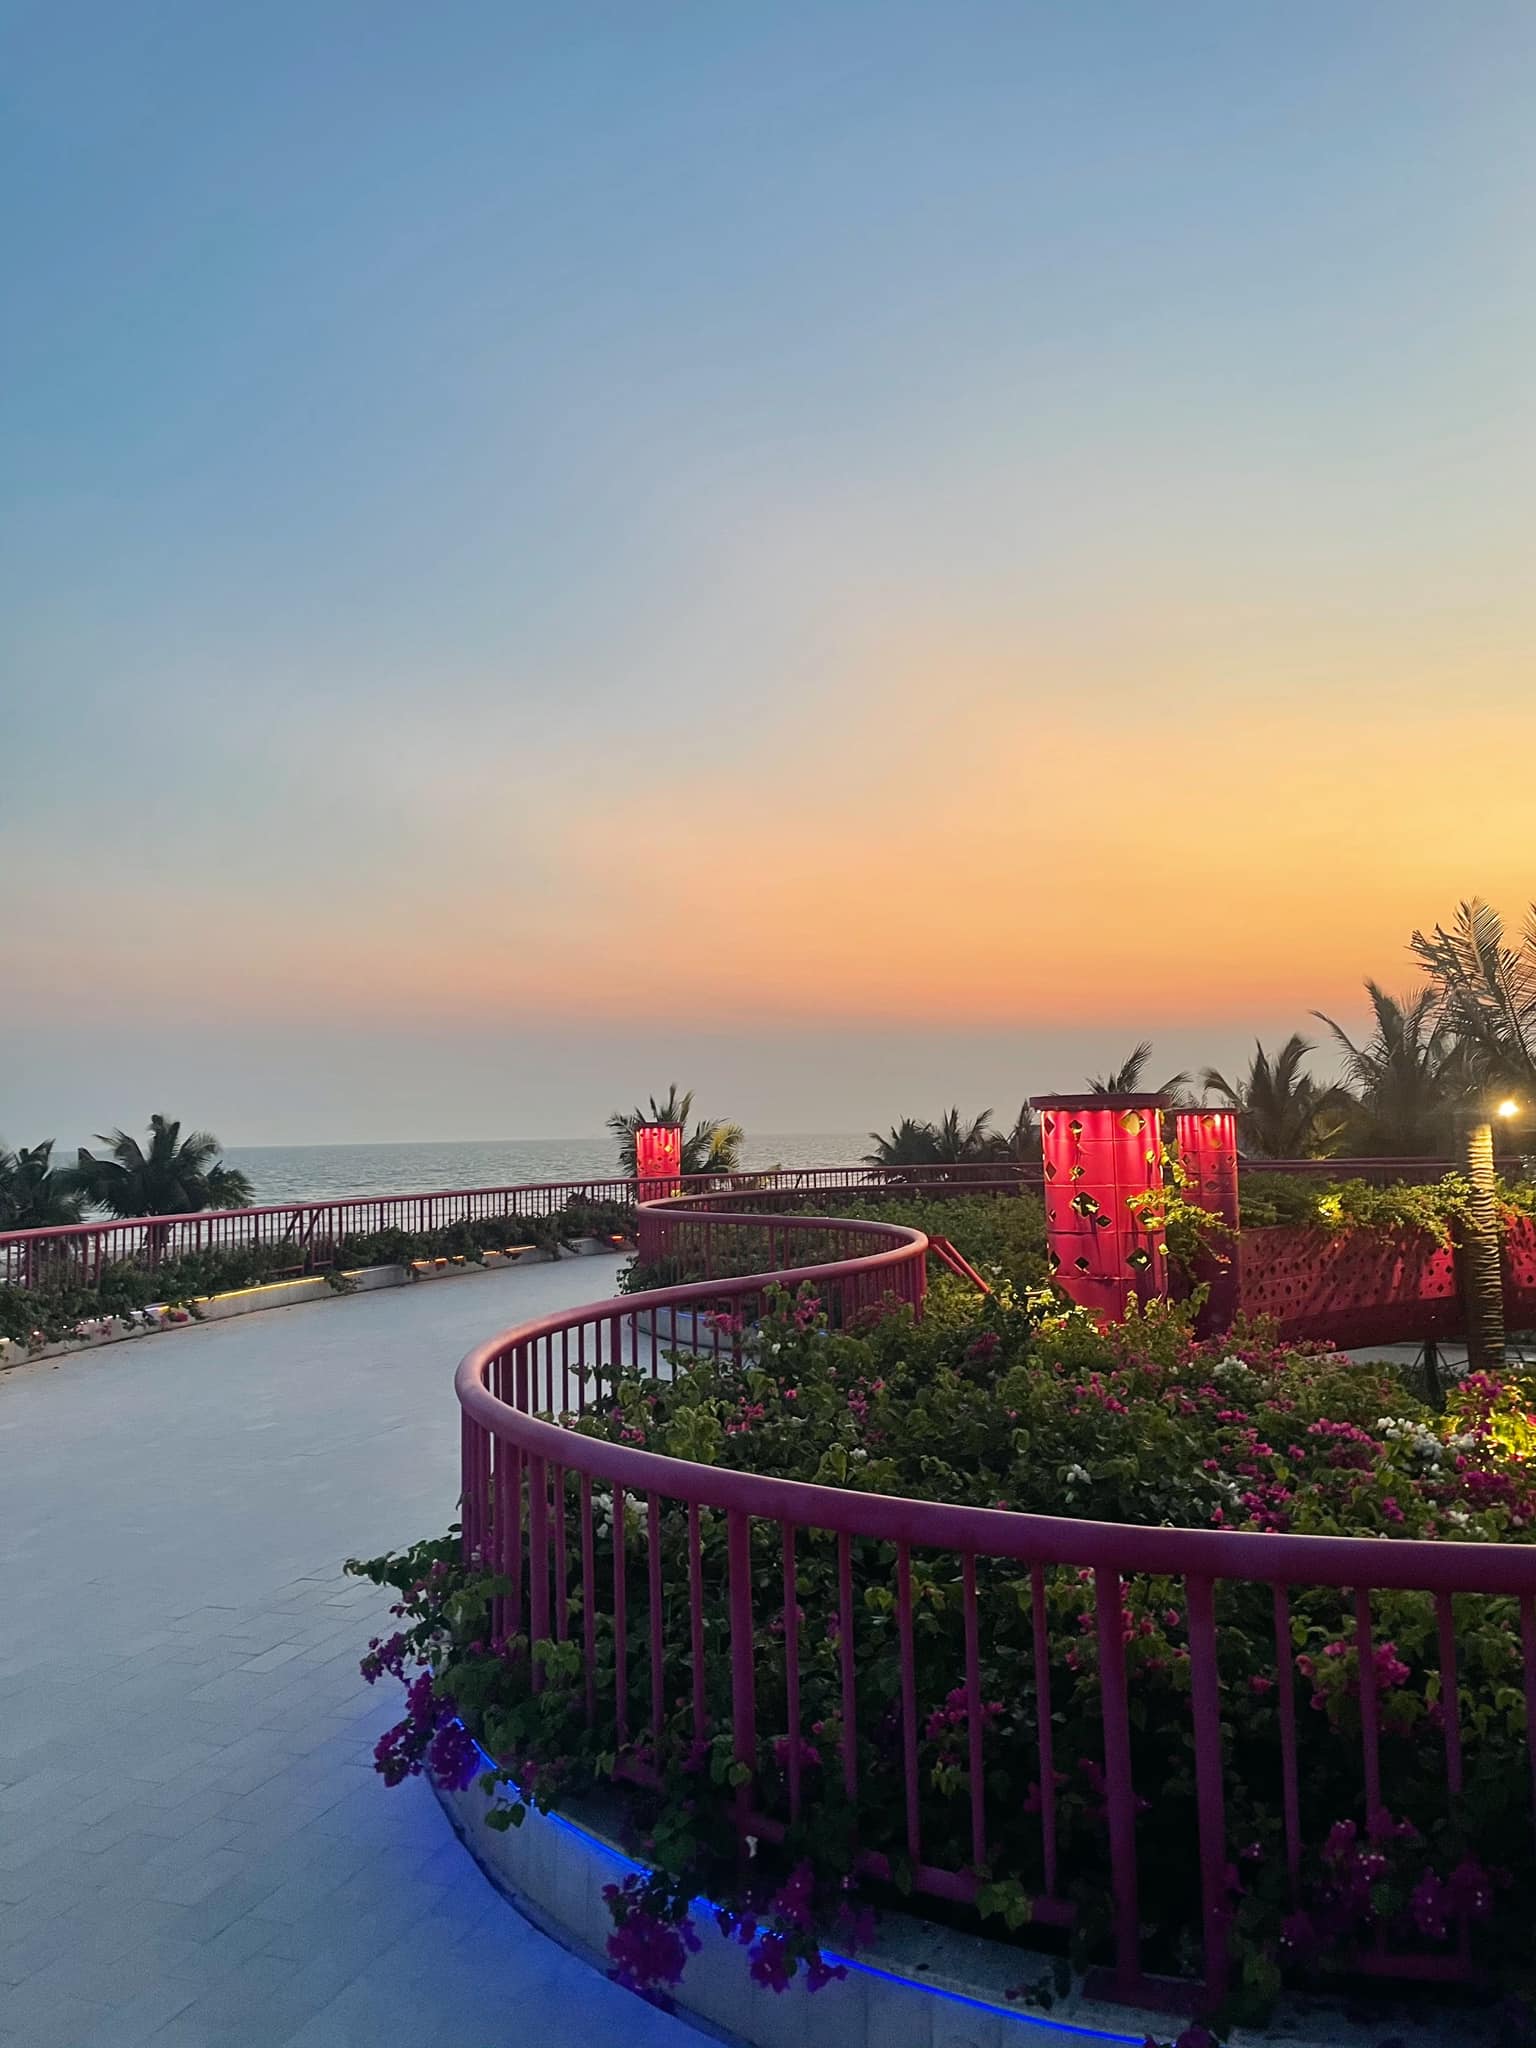 Khu nghỉ dưỡng biển xuất hiện tại Bình Thuận có gì mà ai đến du lịch cũng phải trầm trồ khen ngợi? - Ảnh 8.